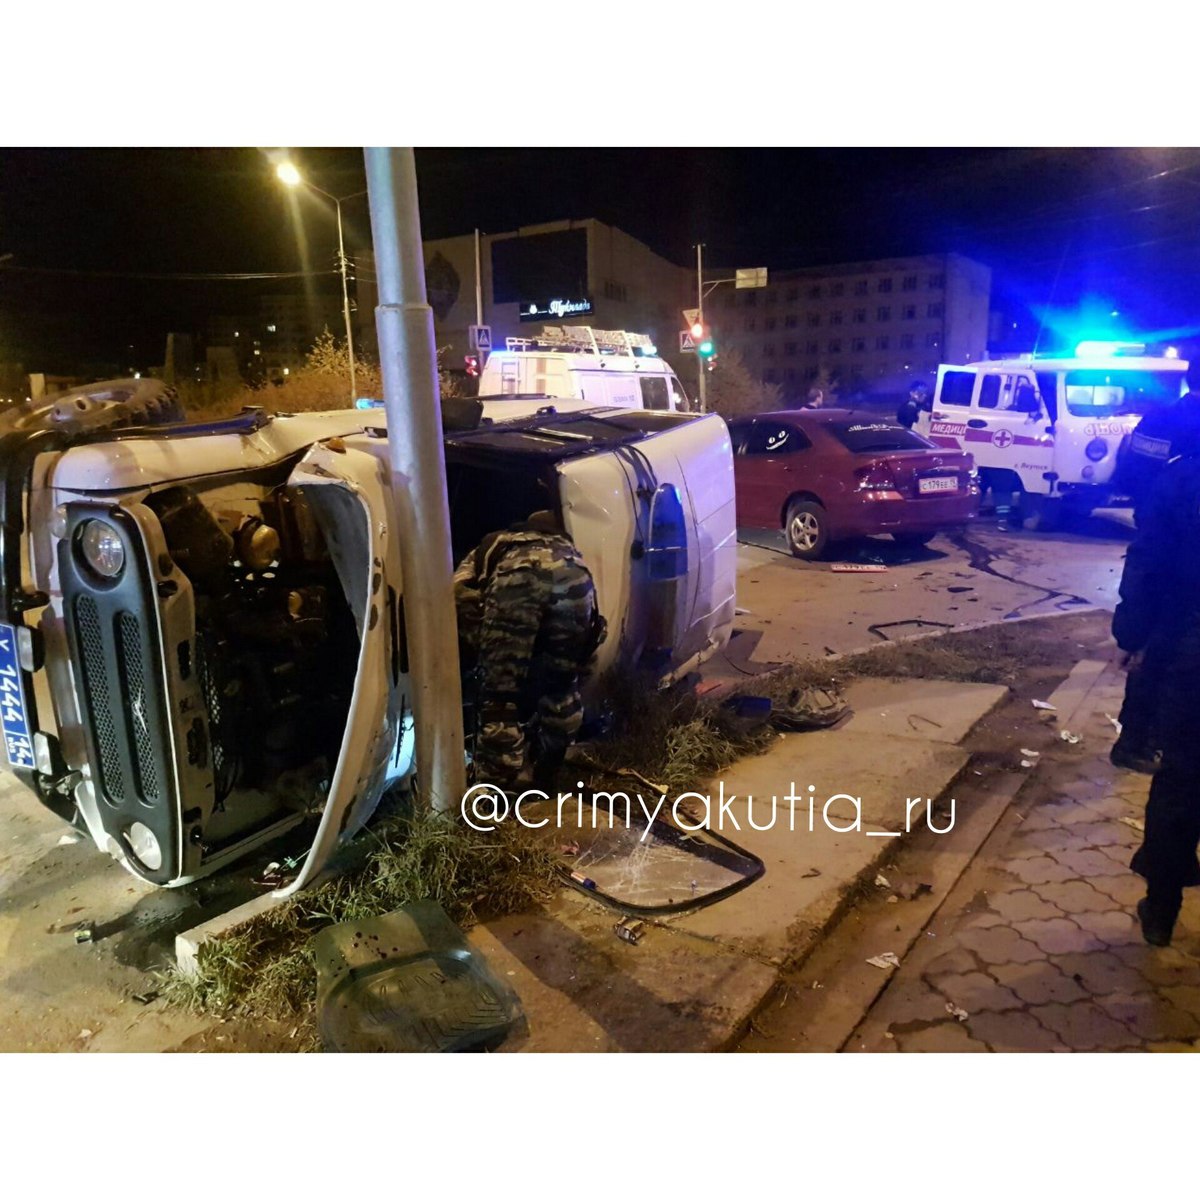 В Якутске ночью произошло смертельное ДТП с участием УАЗ ОМОН и такси "InDriver" (+видео)